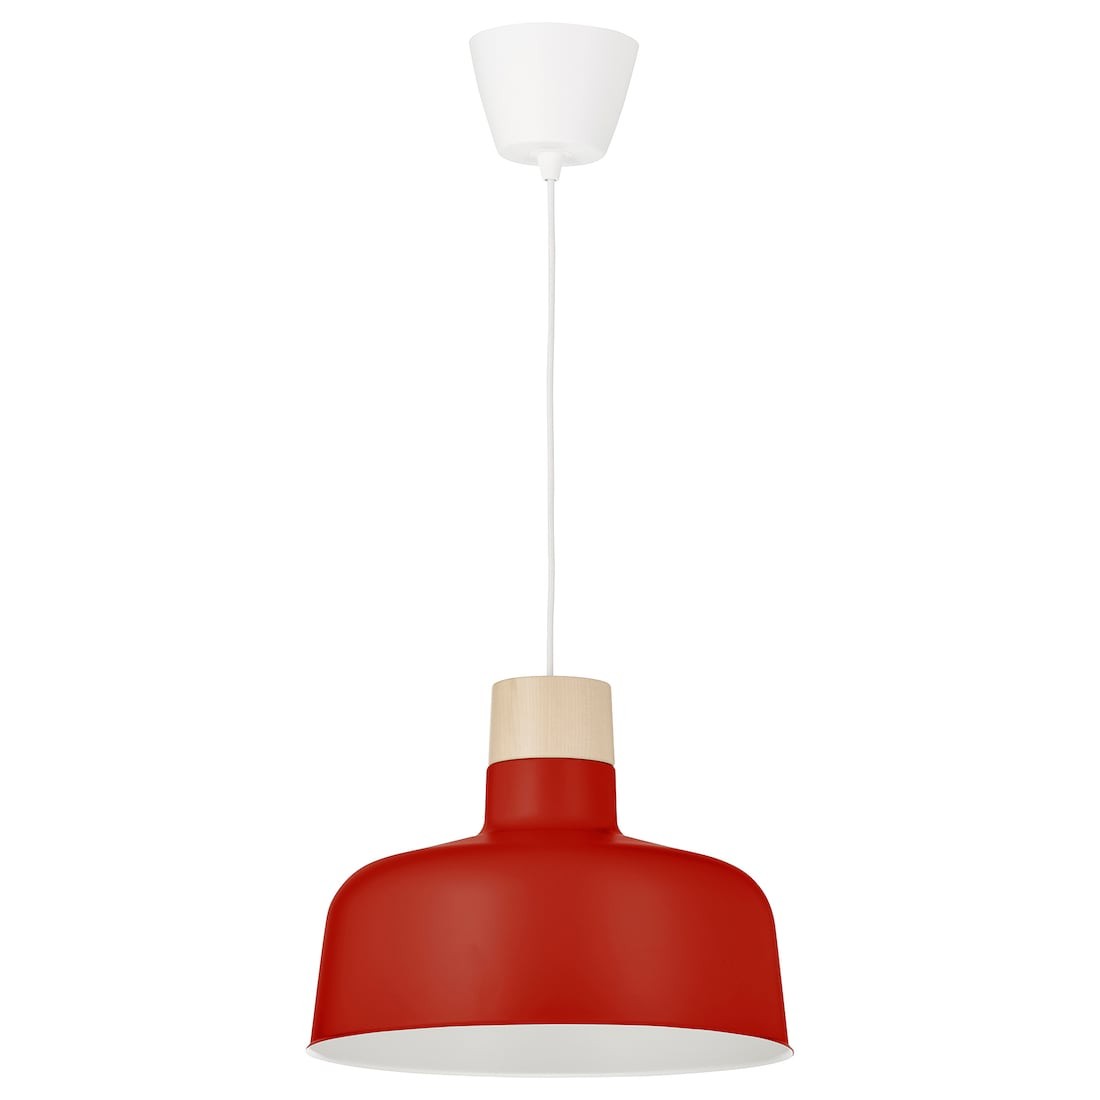 BUNKEFLO Подвесной светильник, красный/береза, 36 см